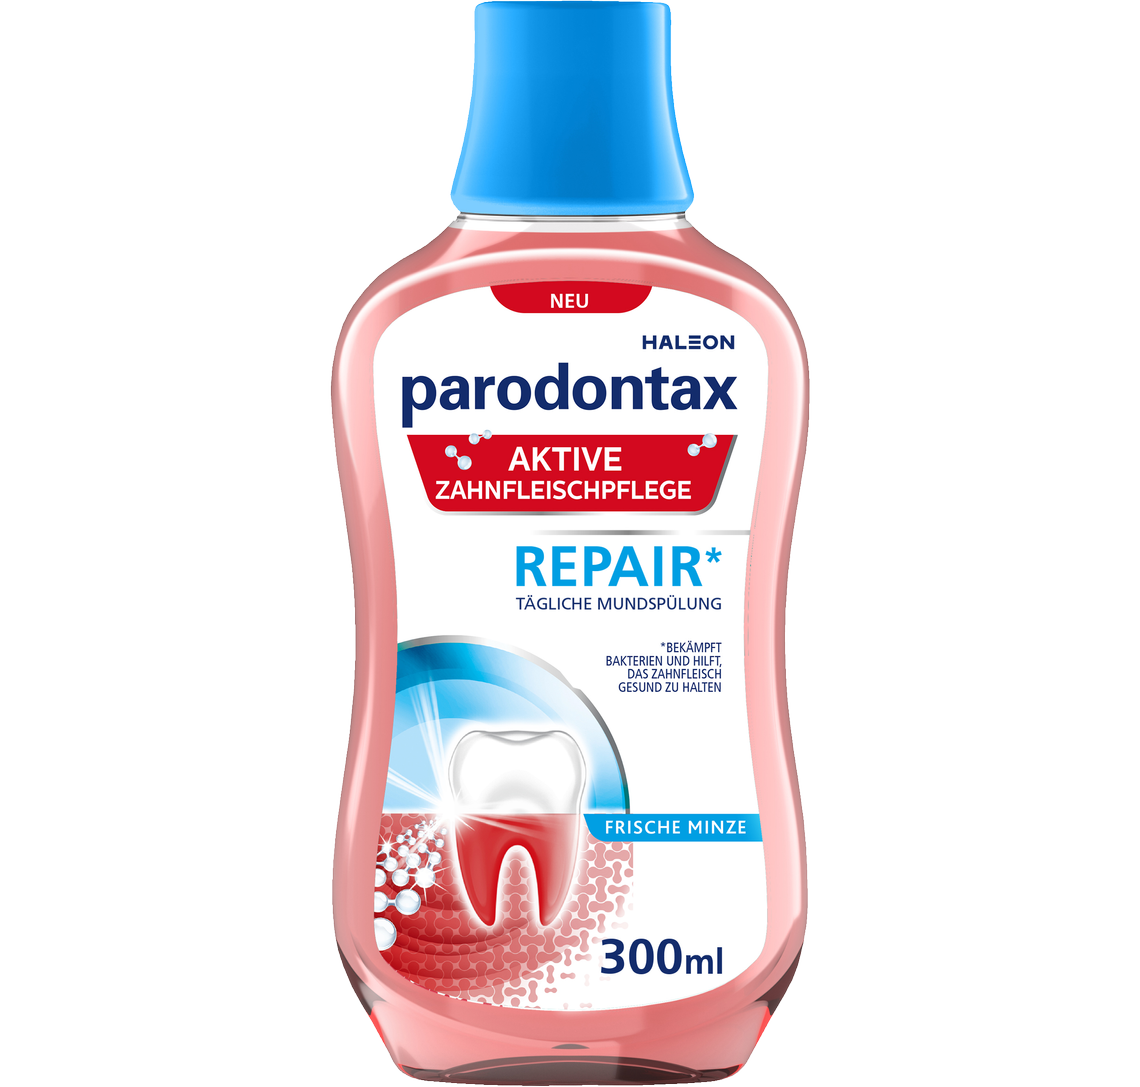 parodontax Aktive Zahnfleischpflege REPAIR<sup>*</sup>